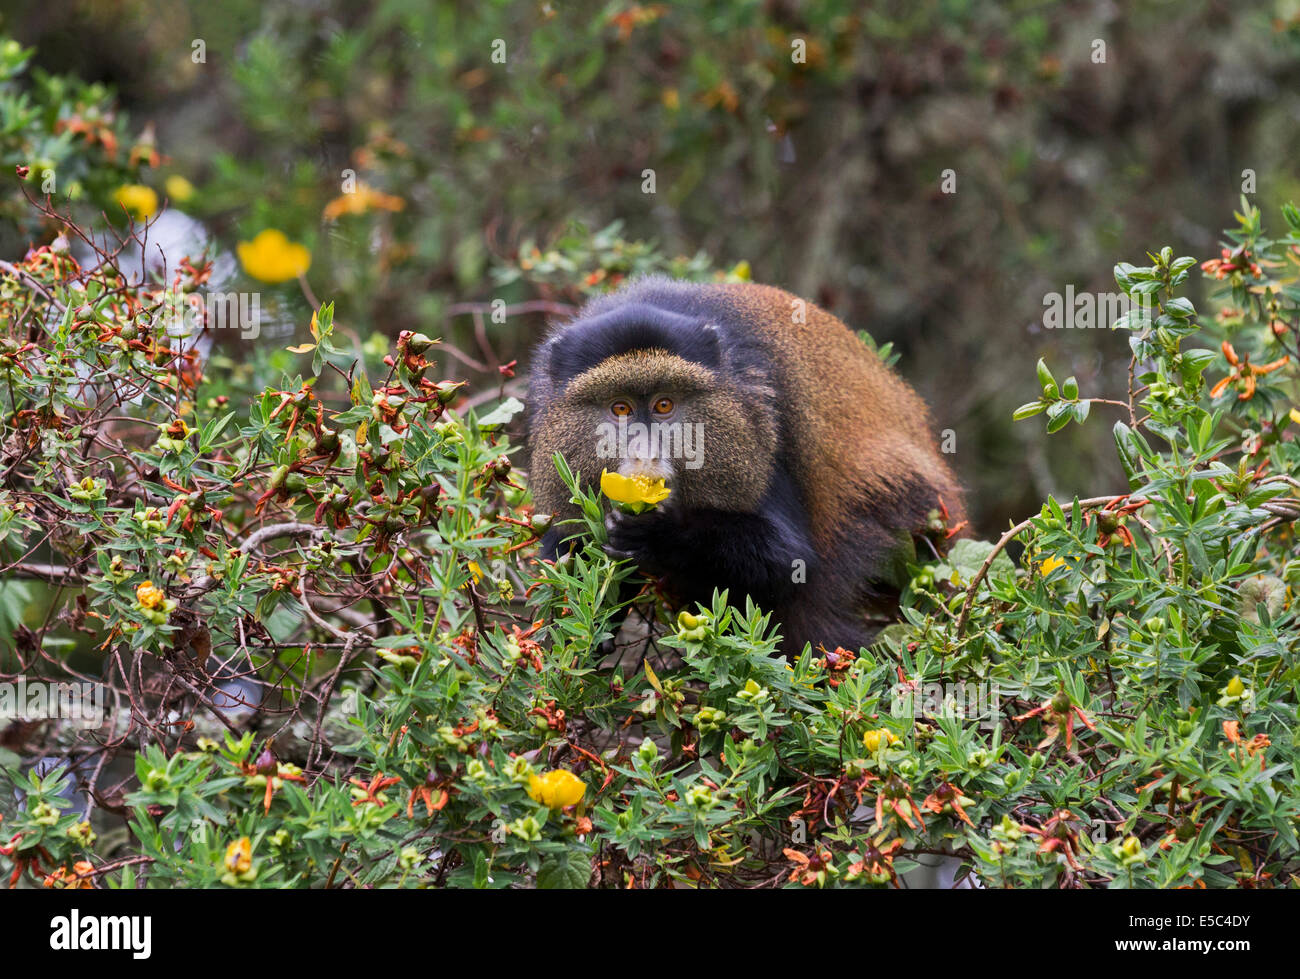 Golden Monkey (Cercopithecus kandti) eating a flower in Mgahinga National Park Uganda. Stock Photo